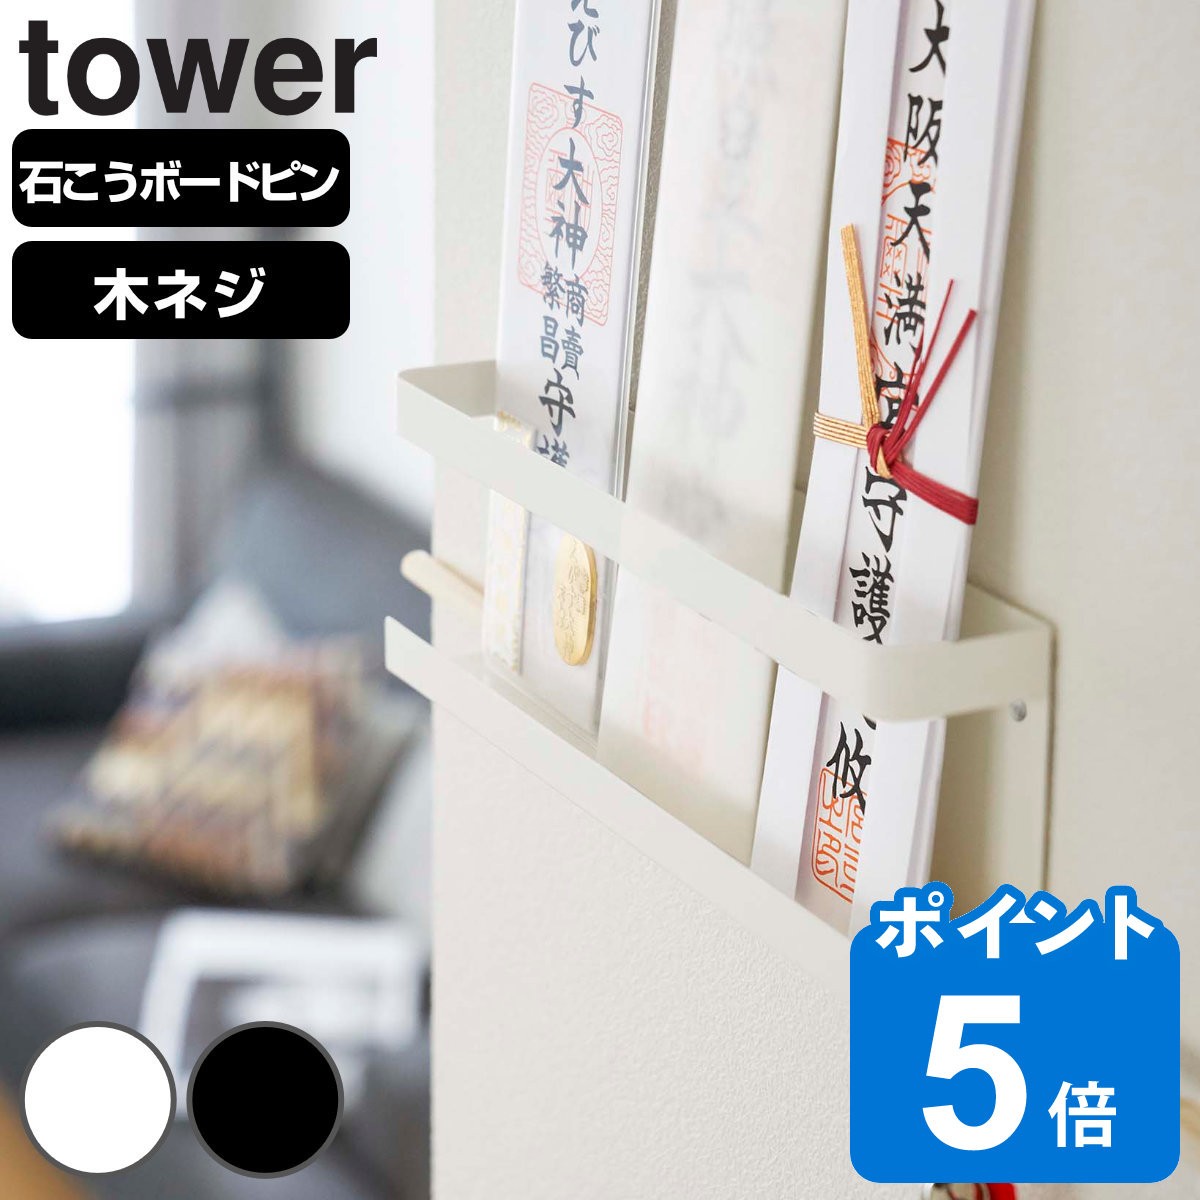 R tower _Dz_[ ^[